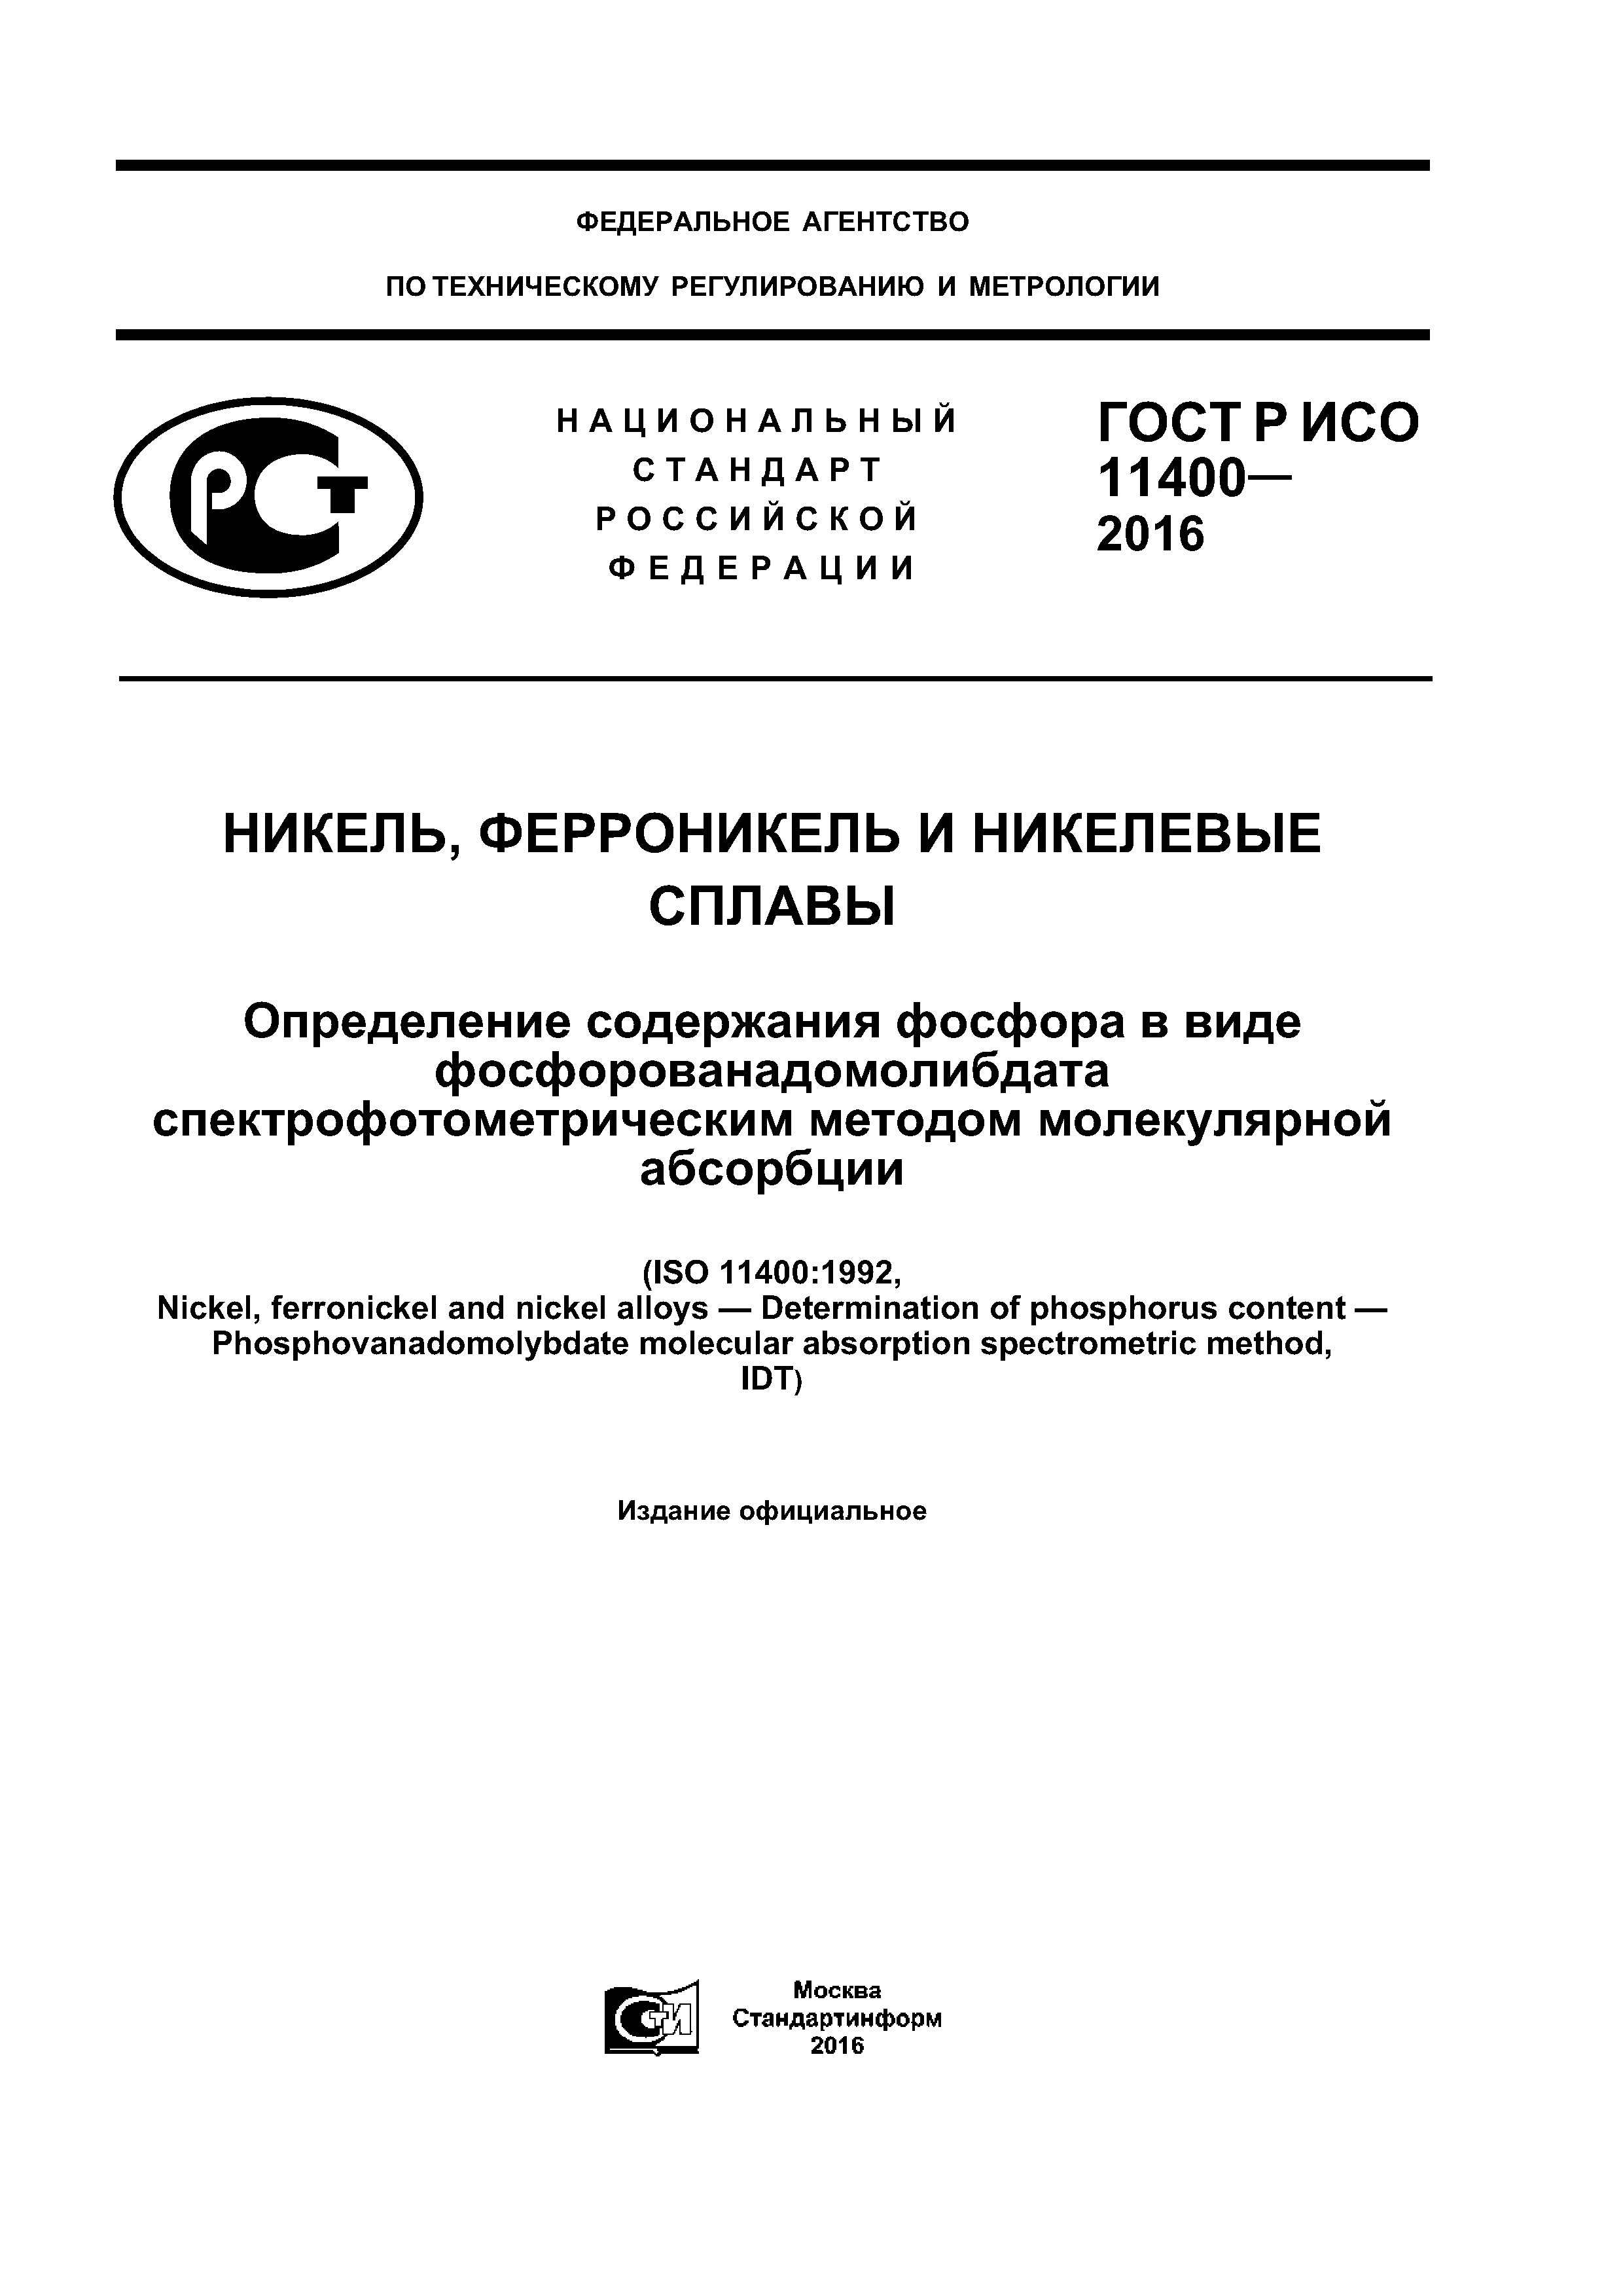 ГОСТ Р ИСО 11400-2016